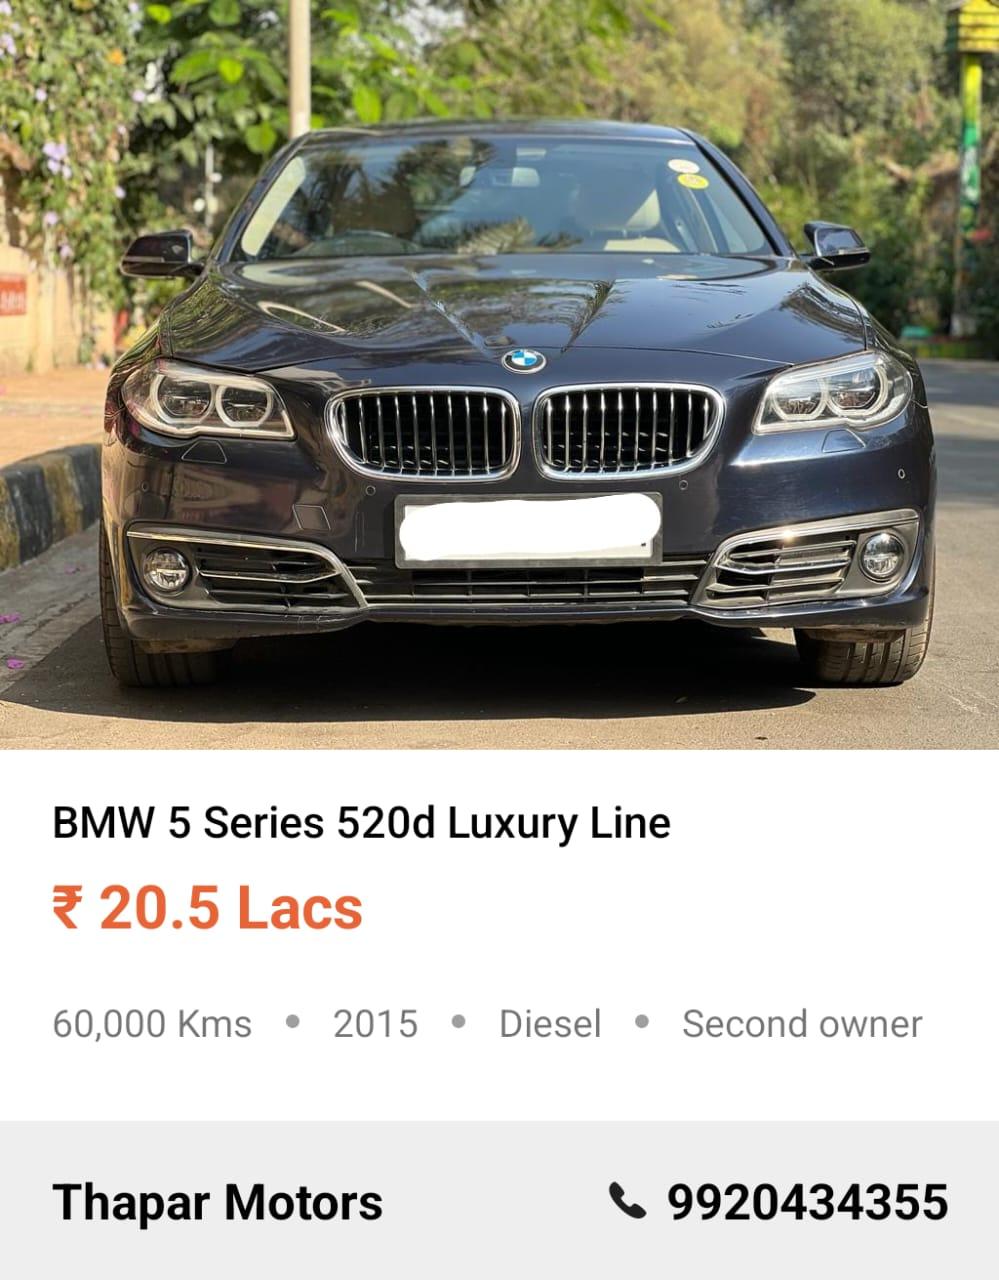 BMW 5 SERIES 520D LUXURY LINE 2015 AT DIESEL